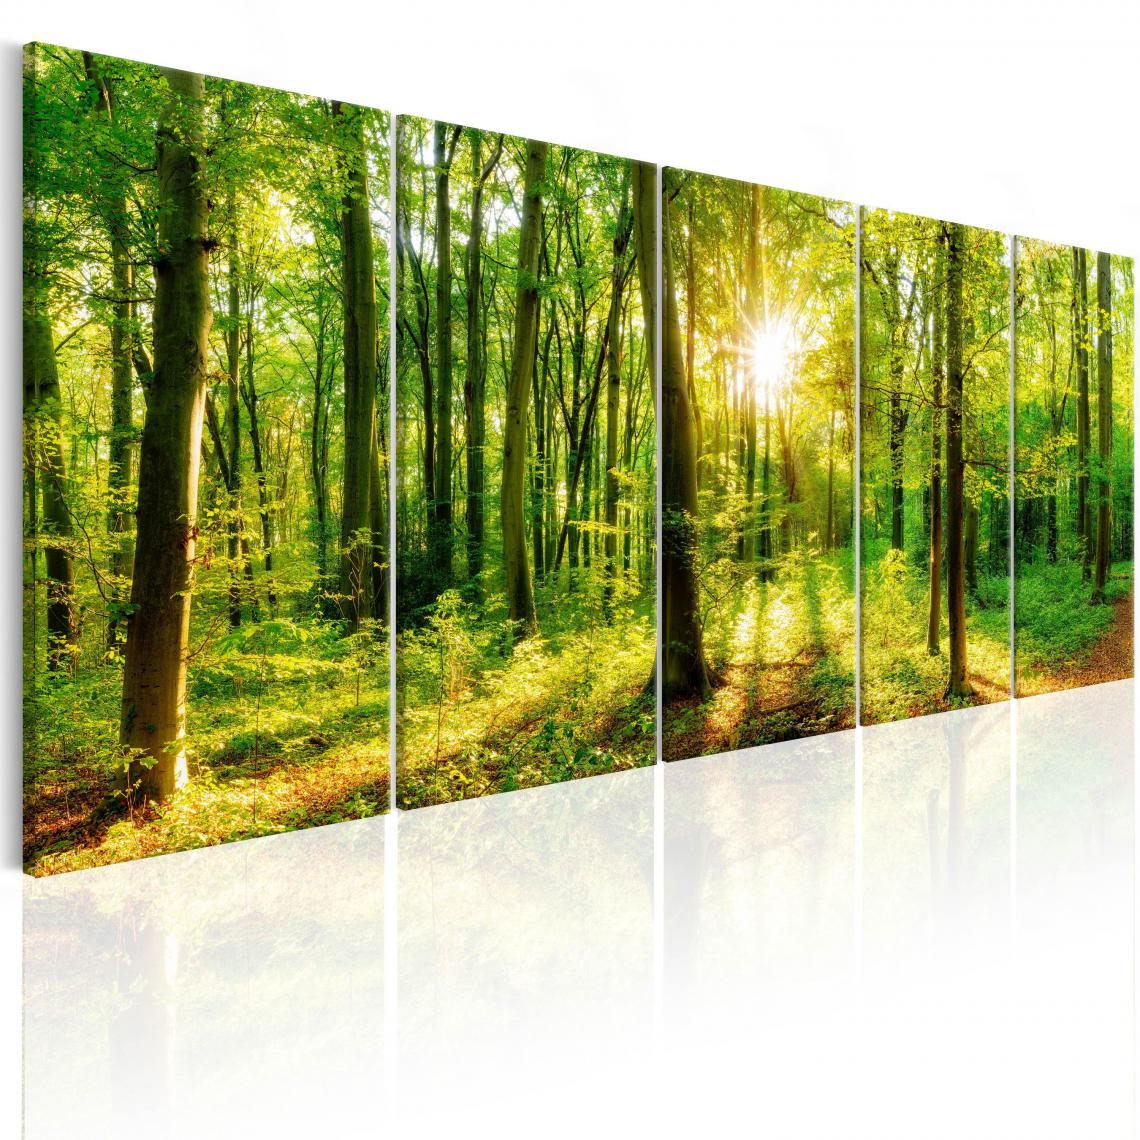 Decoshop26 - Tableau sur toile en 5 panneaux décoration murale image imprimée cadre en bois à suspendre Forêt magiquet 200x80 cm 11_0006360 - Tableaux, peintures